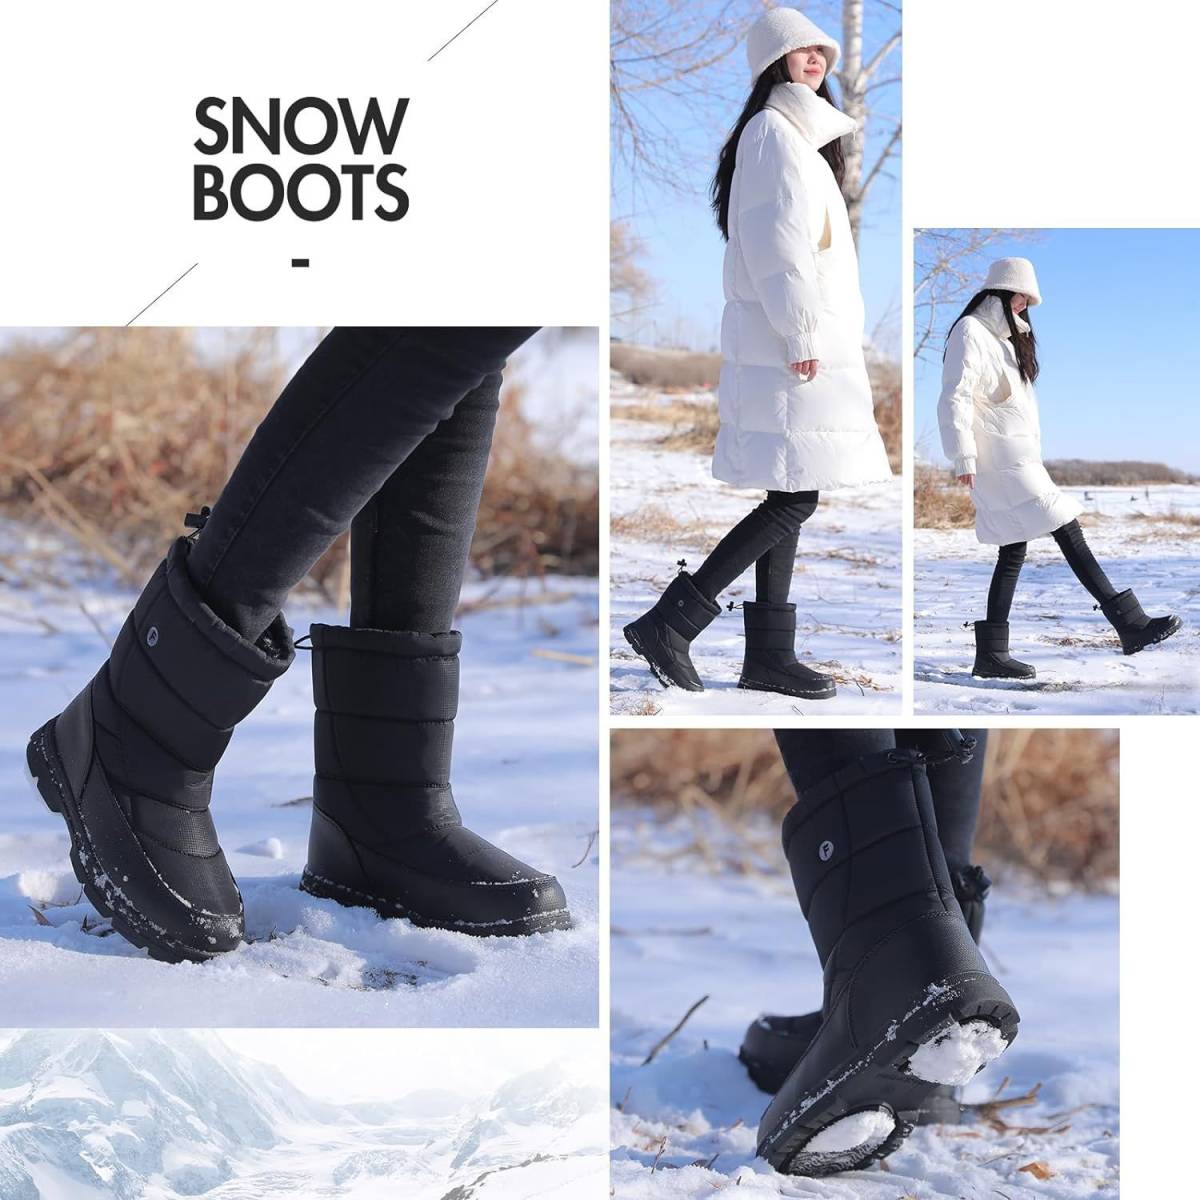  боты снег ботинки мужской женский снегоступы winter ботинки для мужчин и женщин зимний защищающий от холода обувь снег ботинки легкий водонепроницаемый обратная сторона ворсистый . скользить толщина низ 